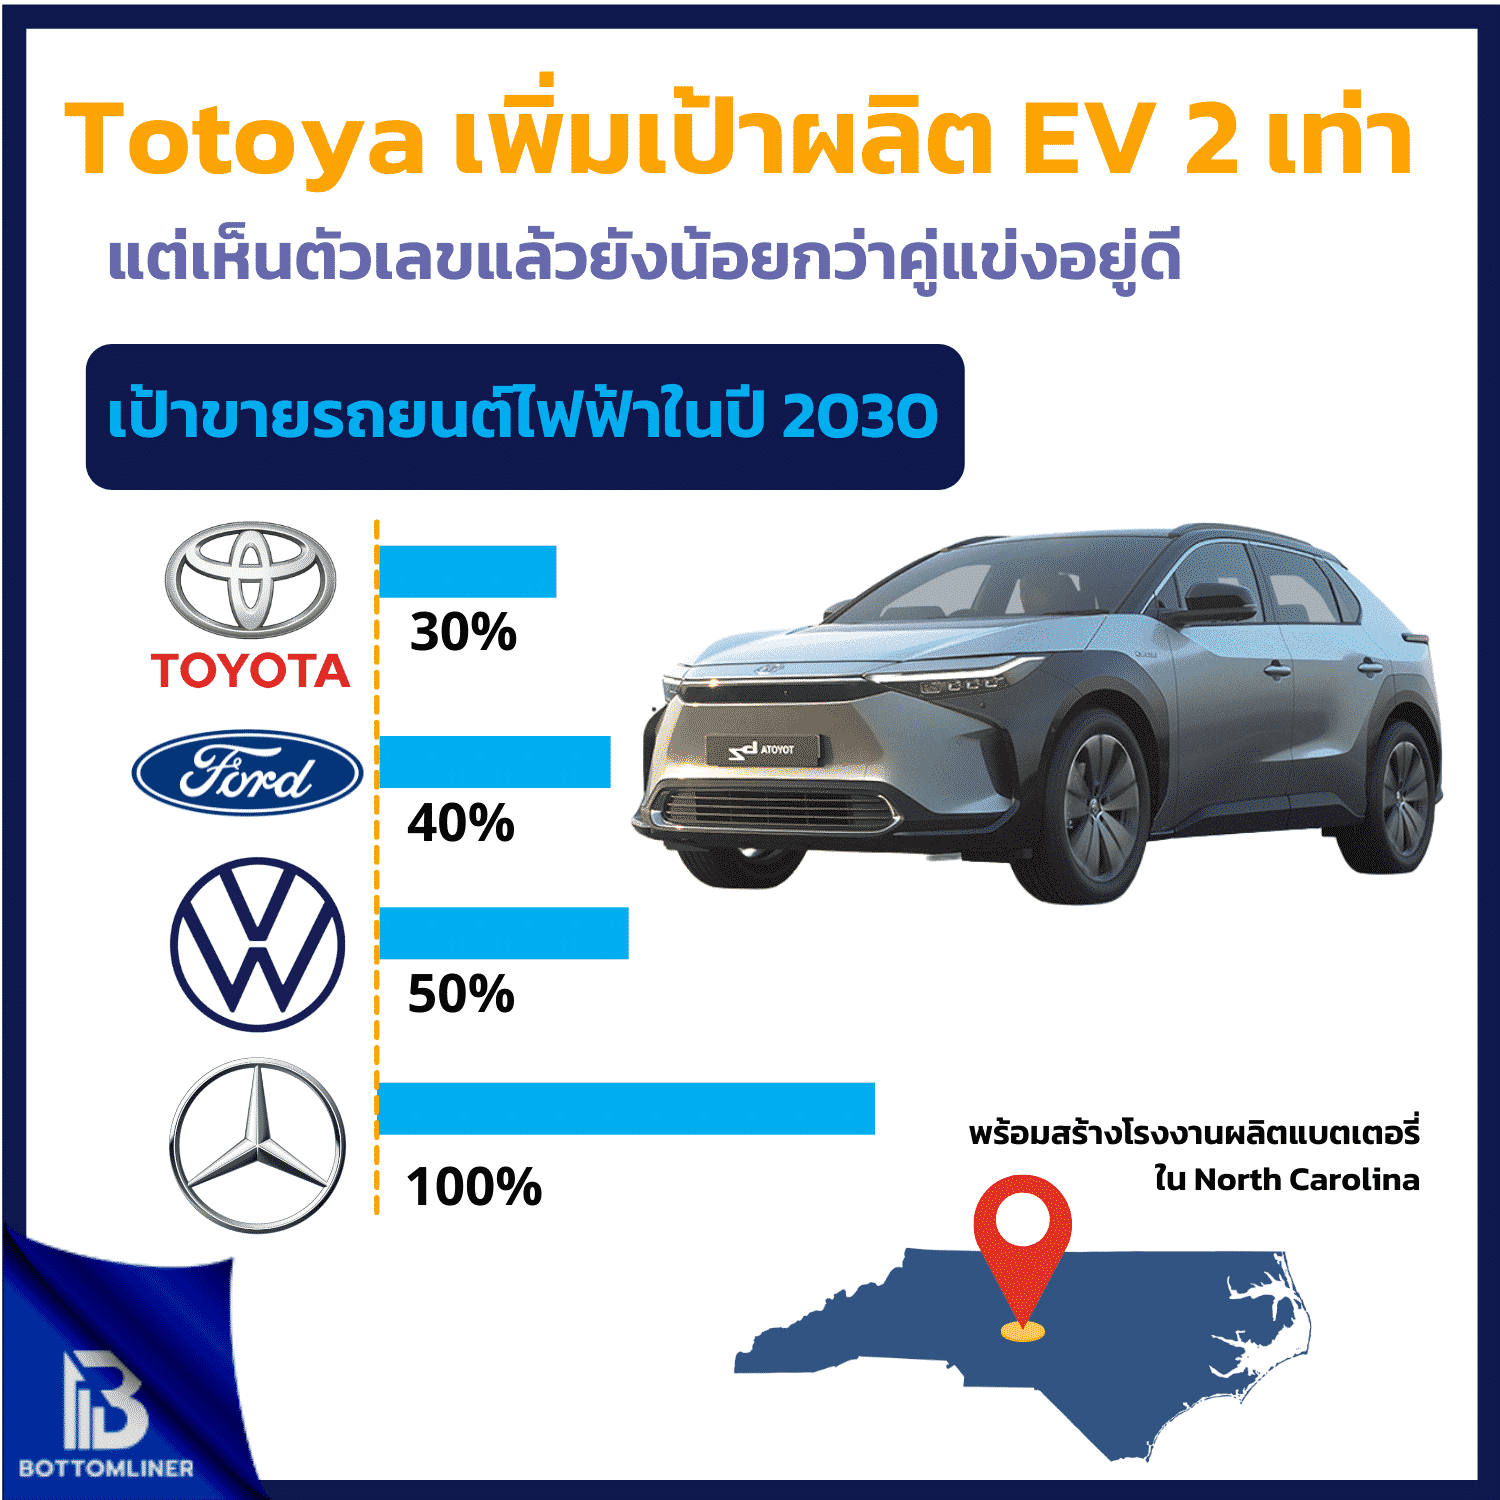 มาช้าดีกว่าไม่มา !! Toyota พลิกโฉมเน้นผลิต EV จำนวนมากในปี 2030